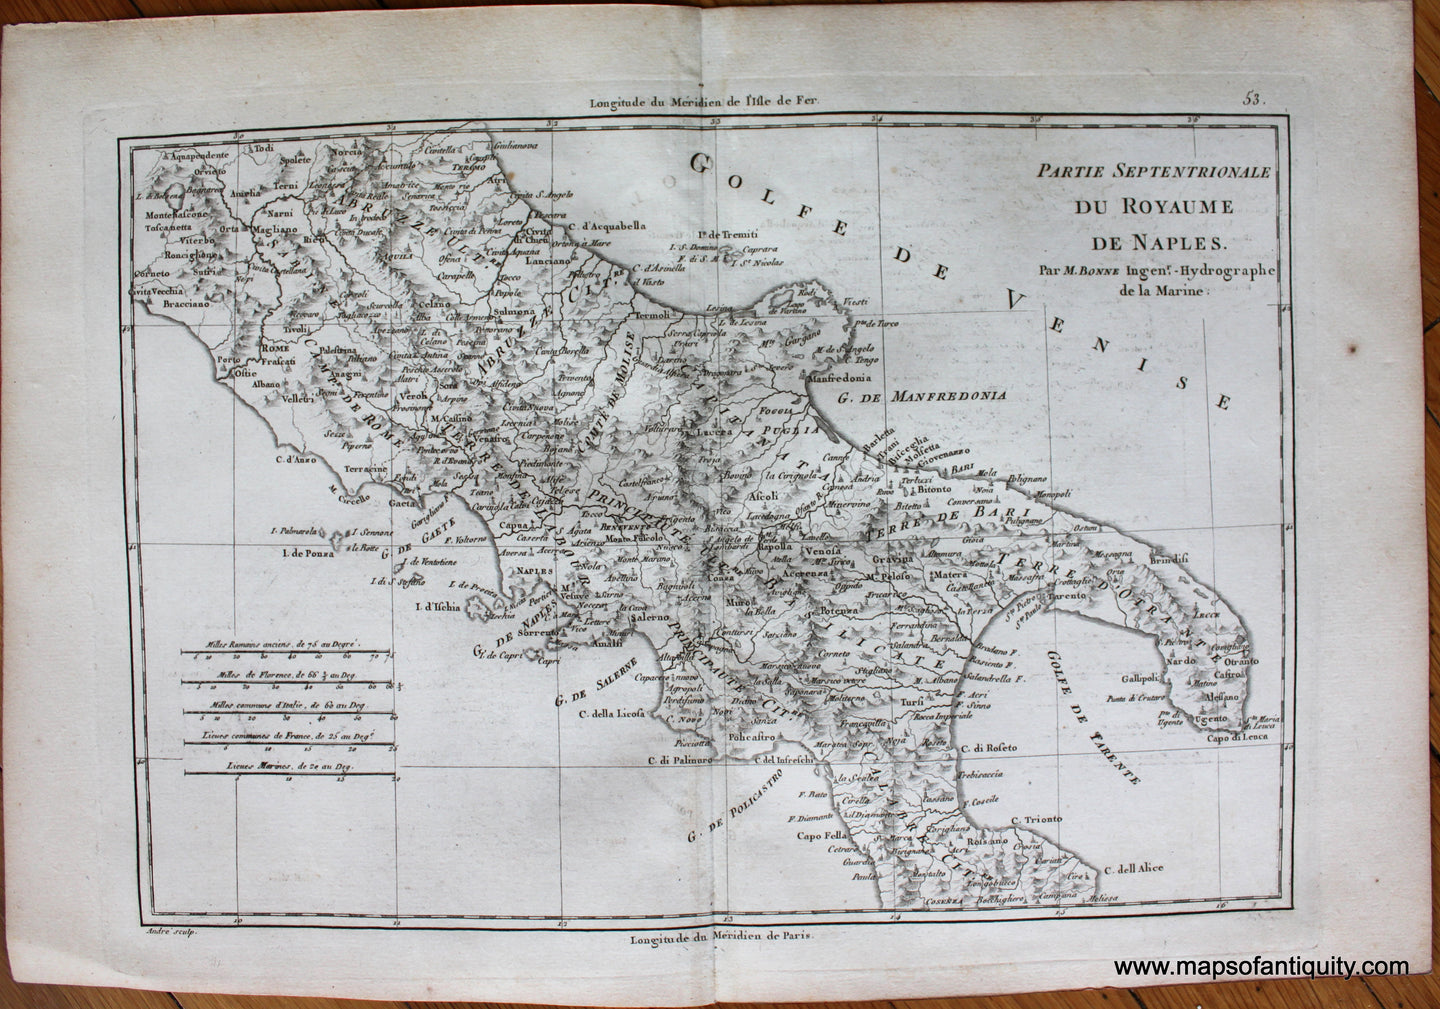 Genuine-Antique-Map-Partie-Septentrionale-du-Royaume-de-Naples.-Europe-Italy-1787-Bonne-and-Desmarest-Maps-Of-Antiquity-1800s-19th-century